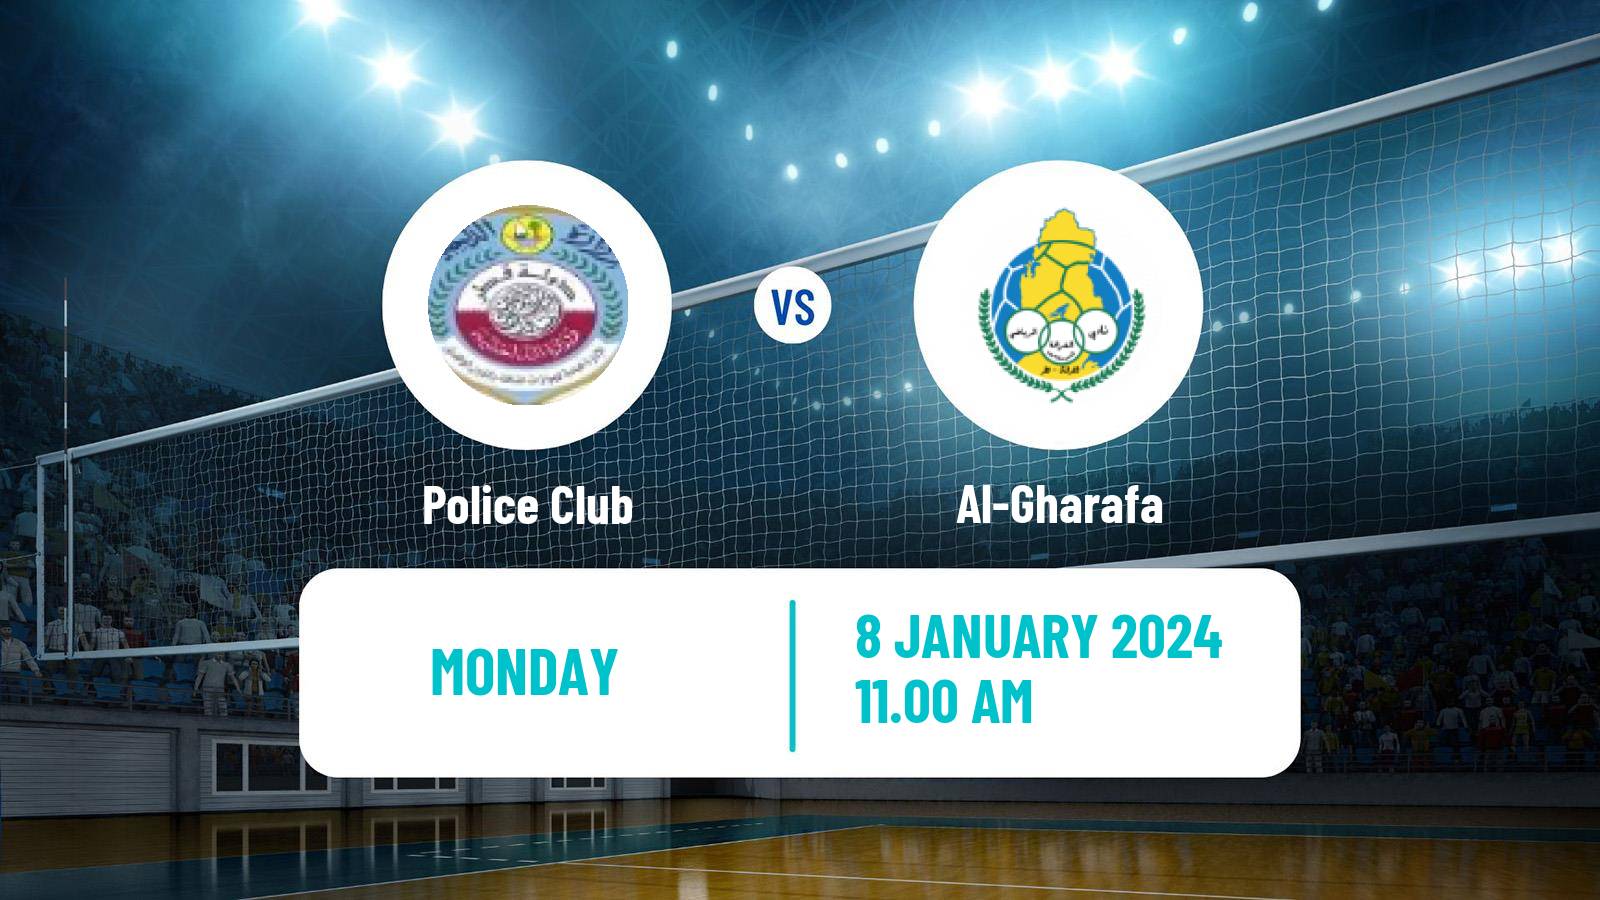 Volleyball Qatar Volleyball League Police Club - Al-Gharafa